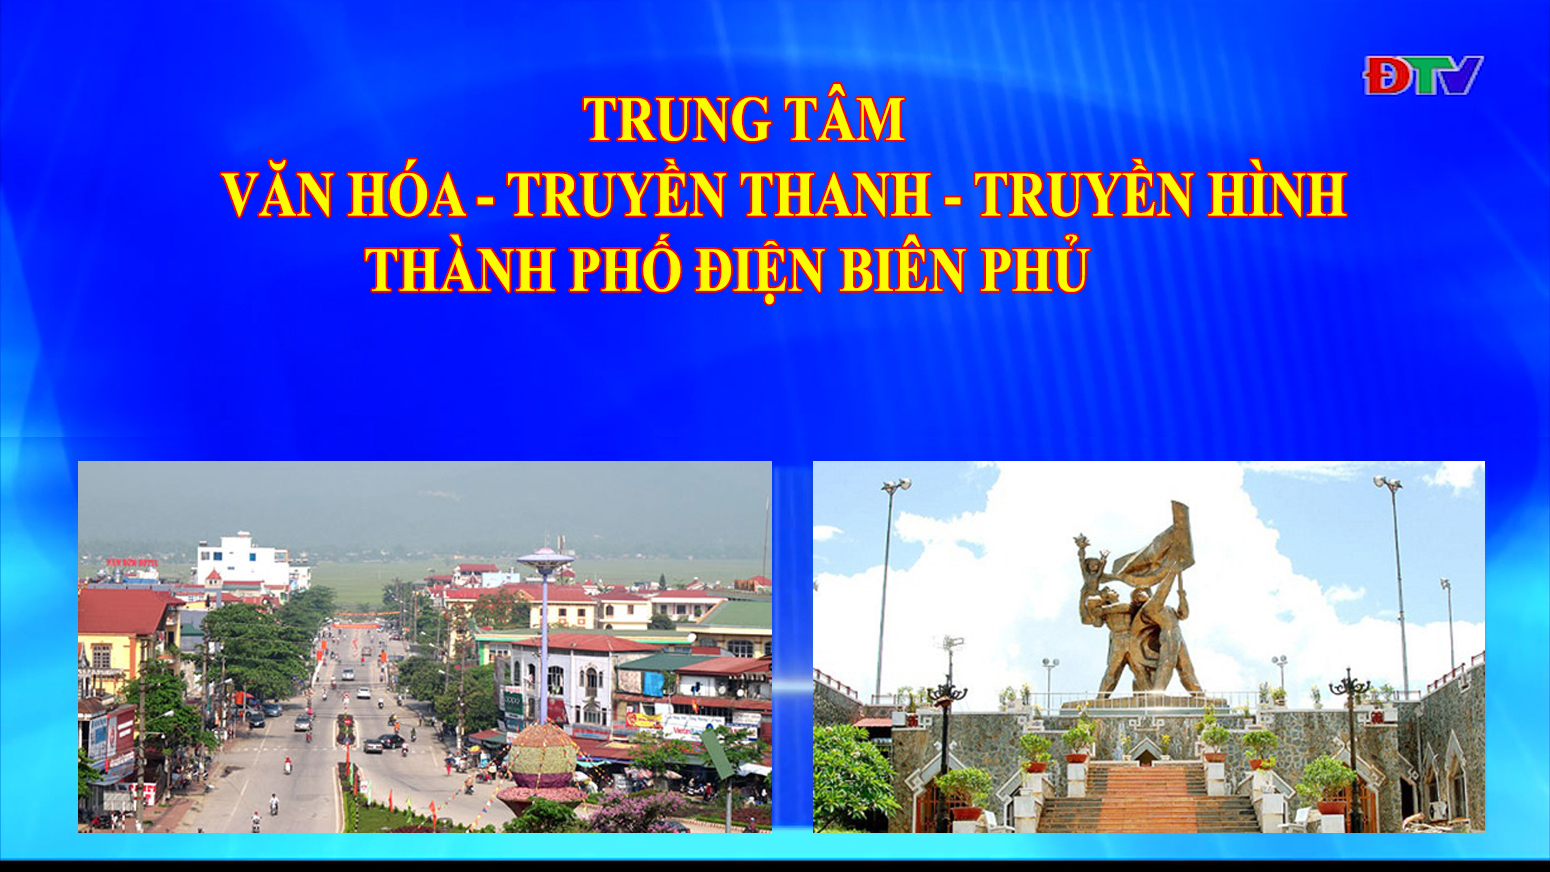 Trung tâm VH-TTTH thành phố Điện Biên Phủ (Ngày 7-6-2022)